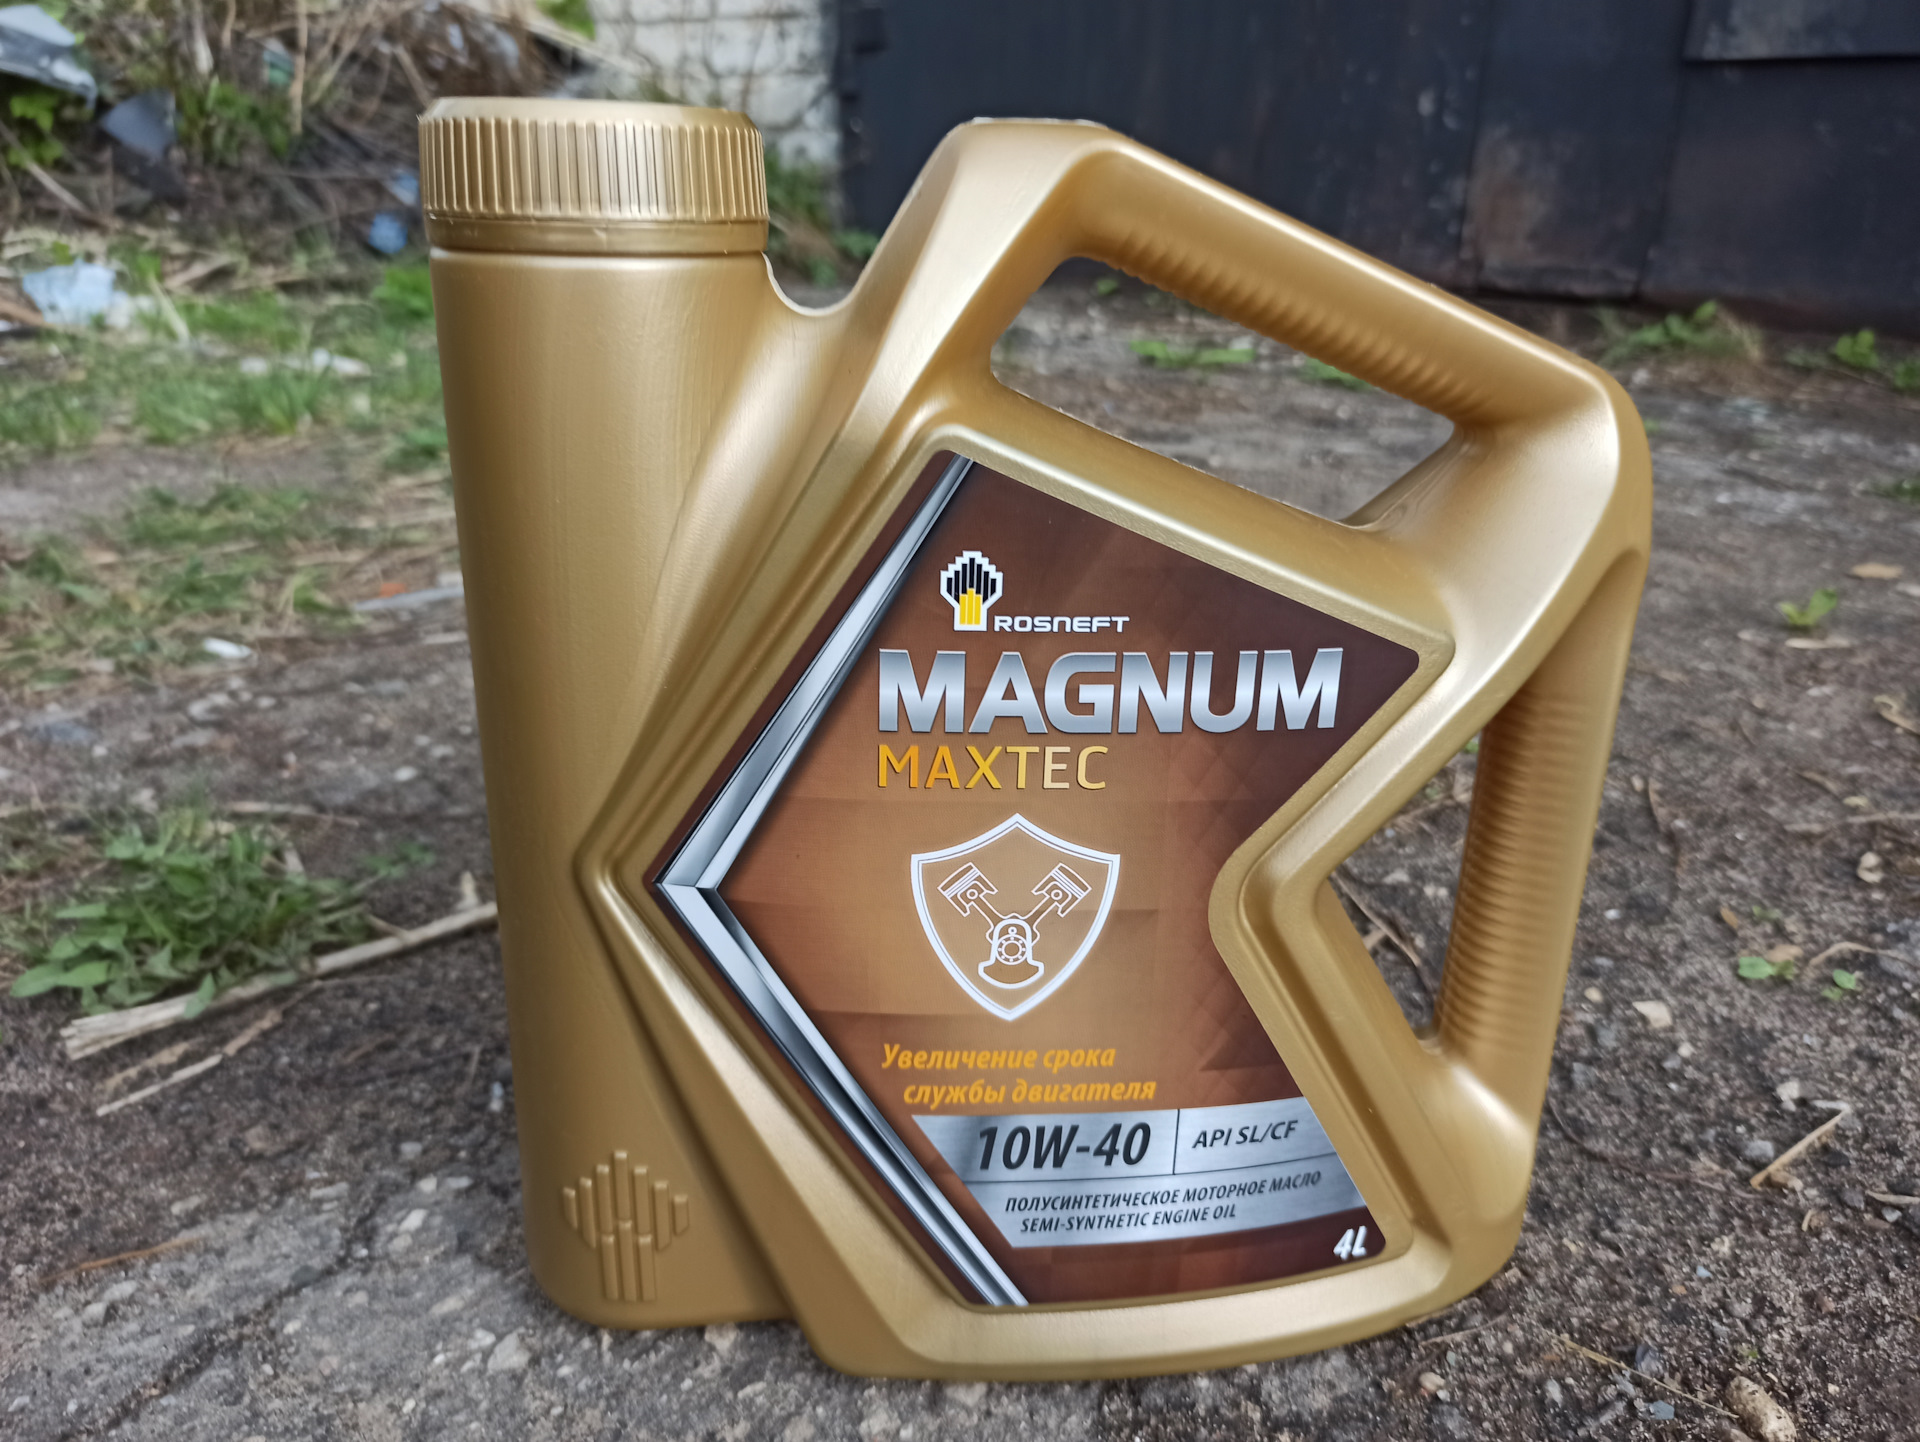 Магнум 40 моторное масло. Rosneft Magnum Maxtec 10w-40. Масло Магнум. Масло Магнум премиум. Можно применять масло Магнум синтетику 5 w40 в калину и отзывы.